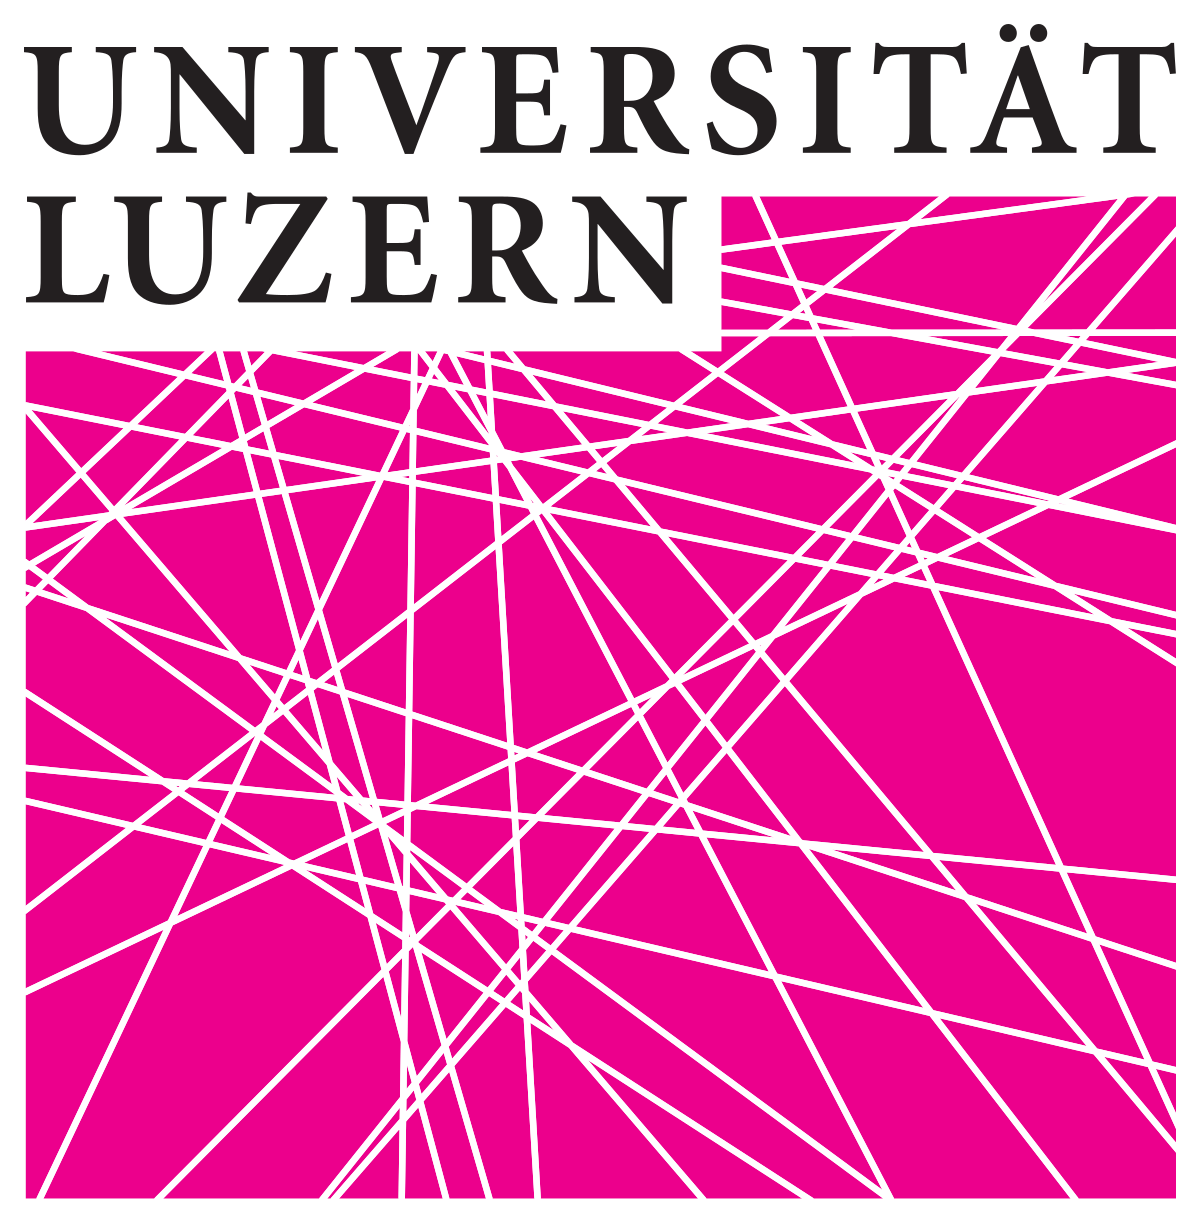 Referenzen: Universität Luzern / IKF